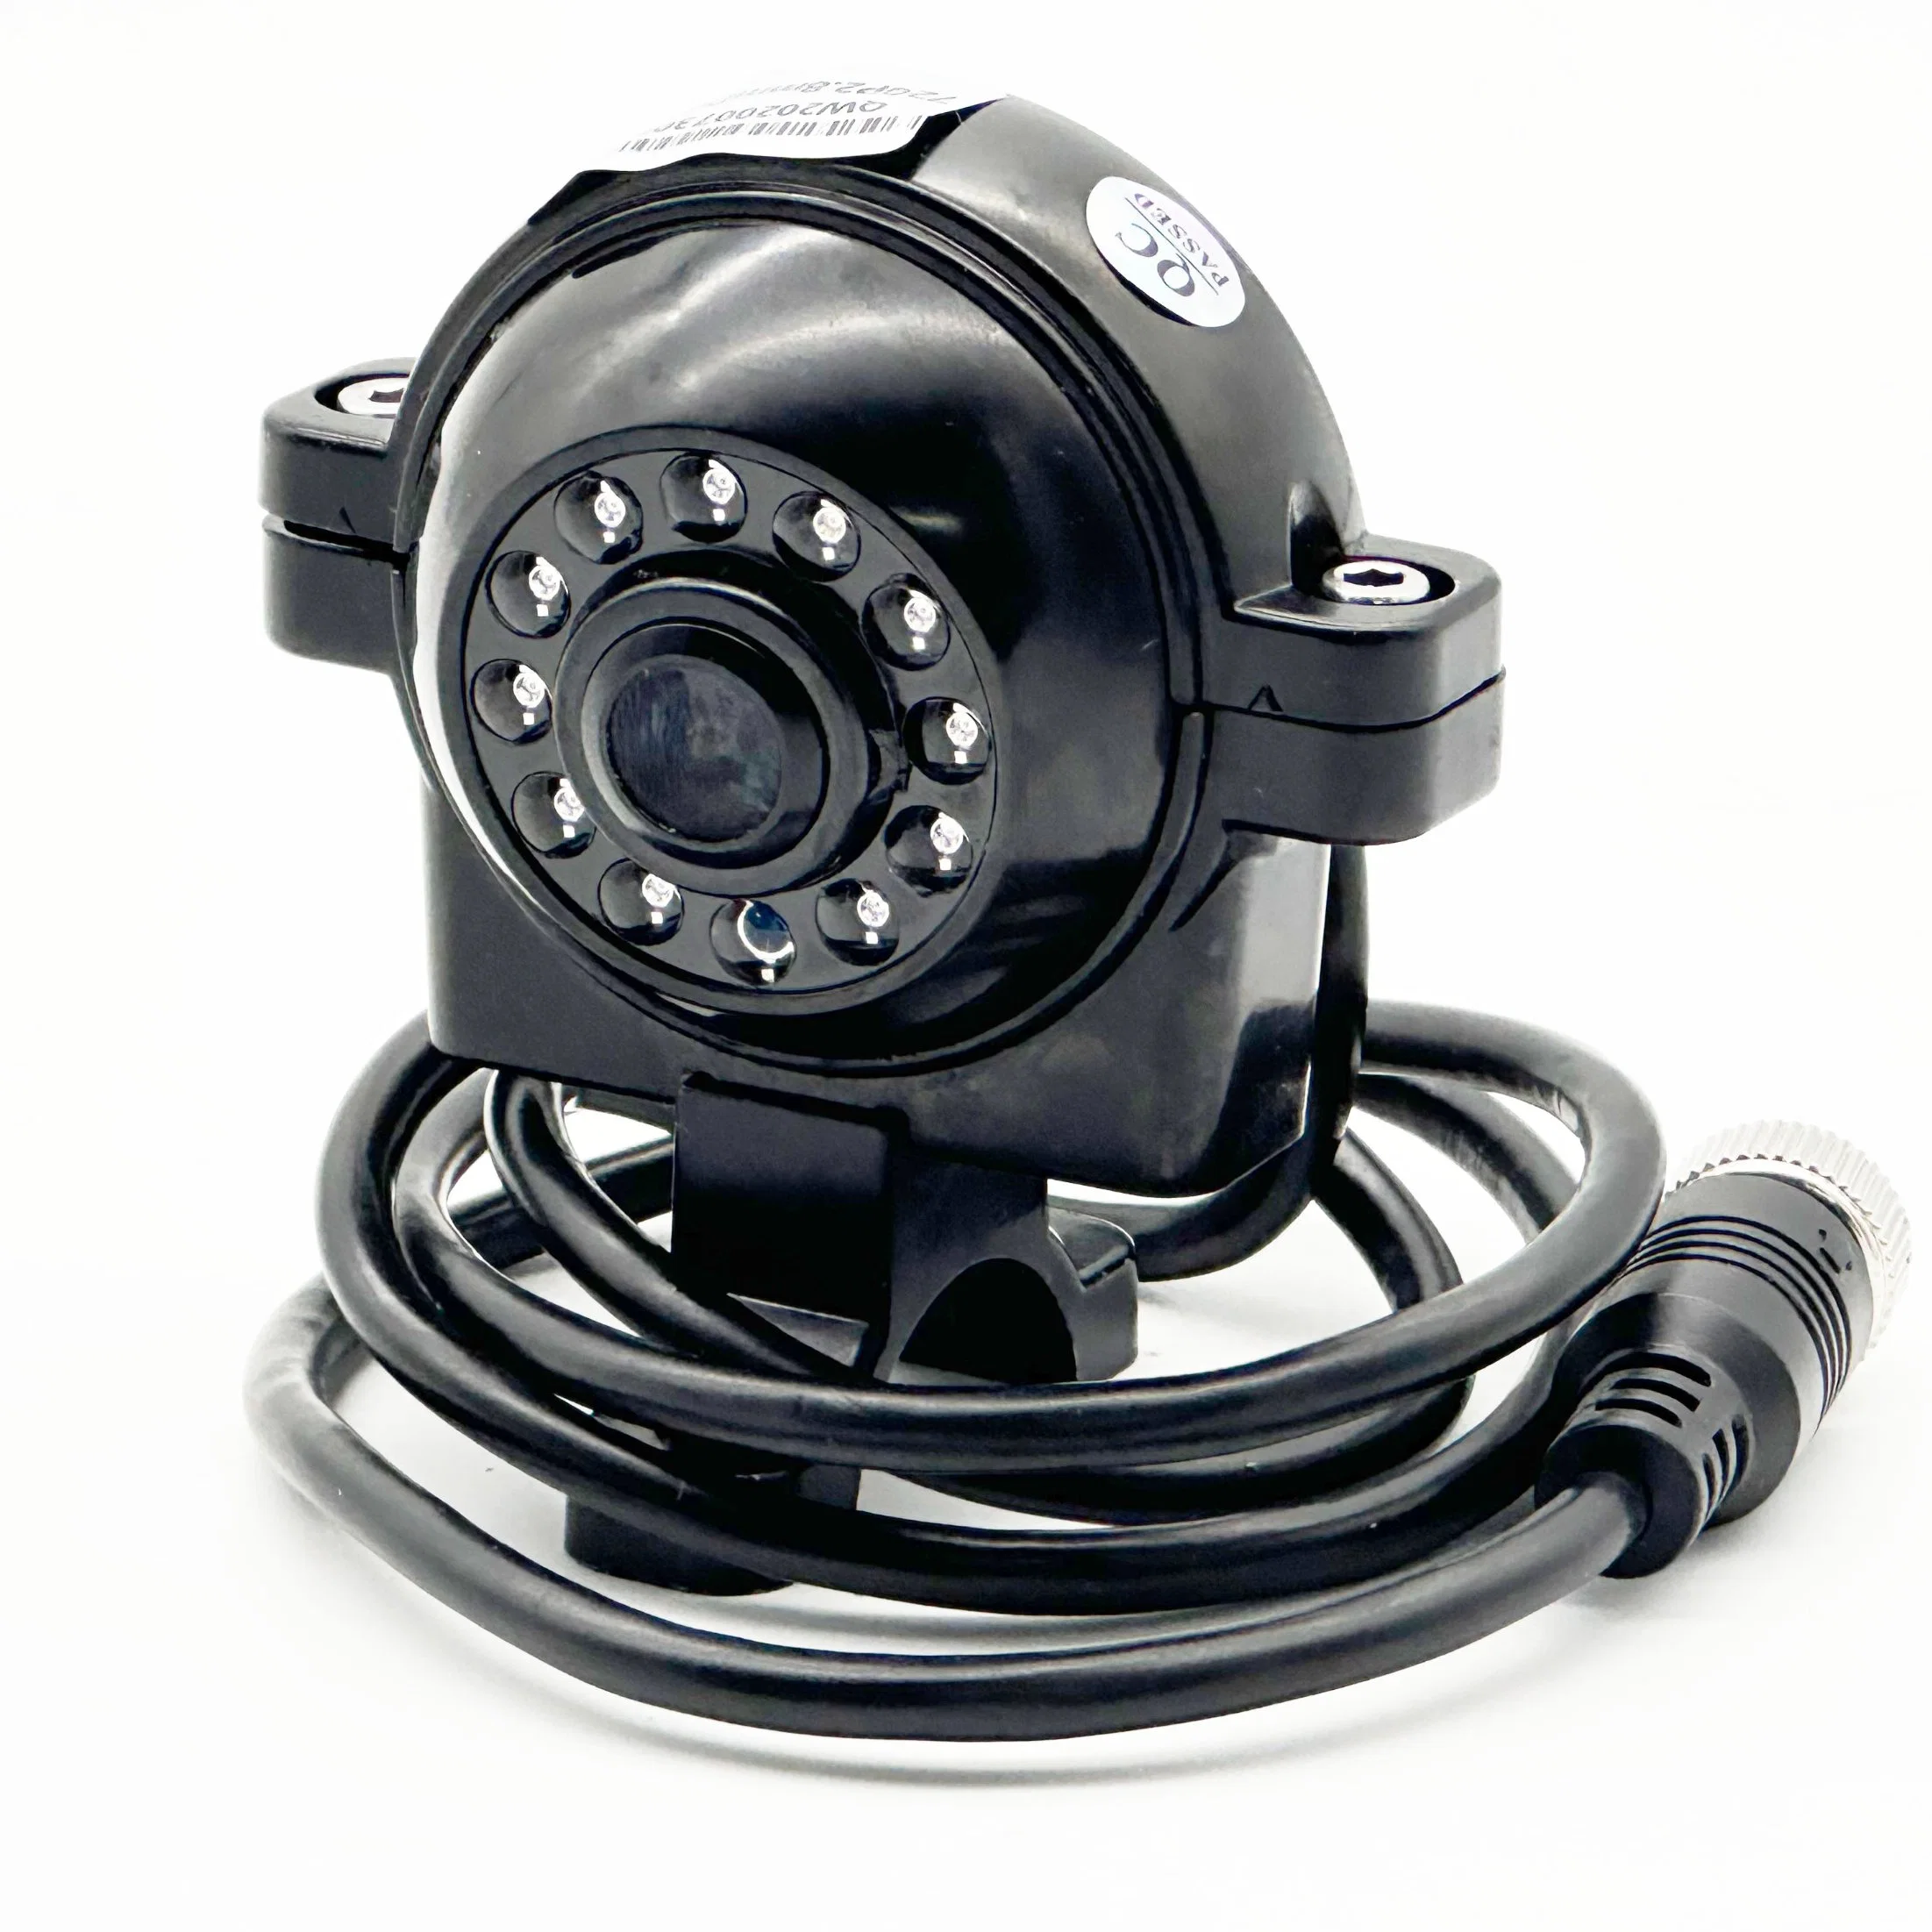 Автомобильная система видеонаблюдения FL-720p/1080P с функцией внешнего вида Камера видеонаблюдения